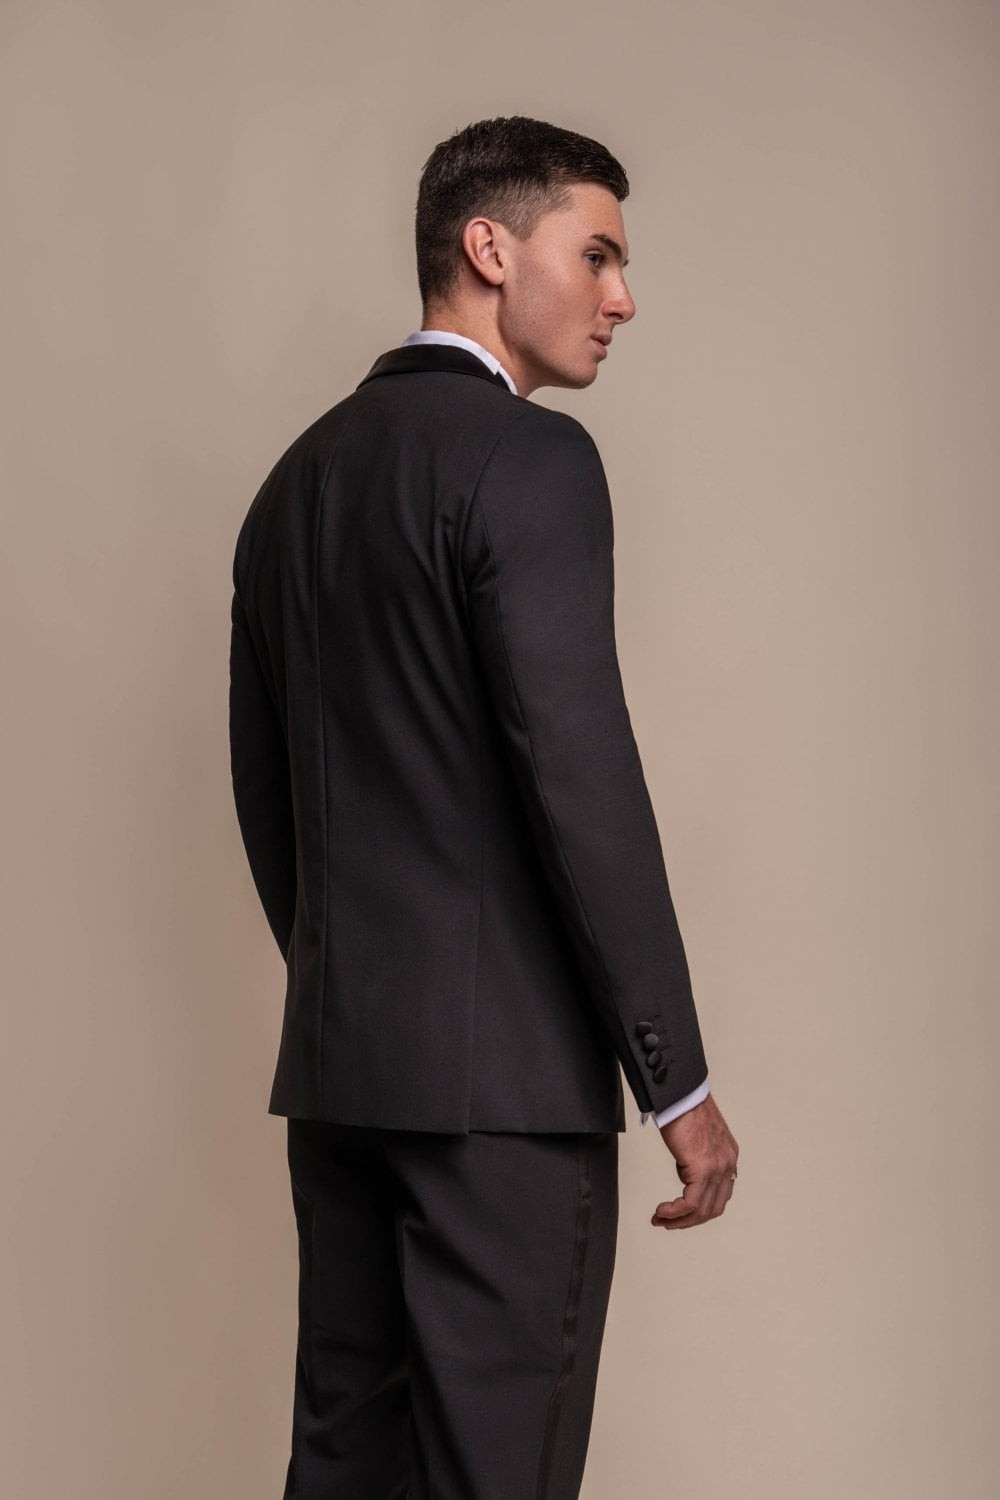 Herren-Smokinganzug aus Wollmischung in schmaler Passform, formelle schlichte Jacke und Hose, separat erhältlich